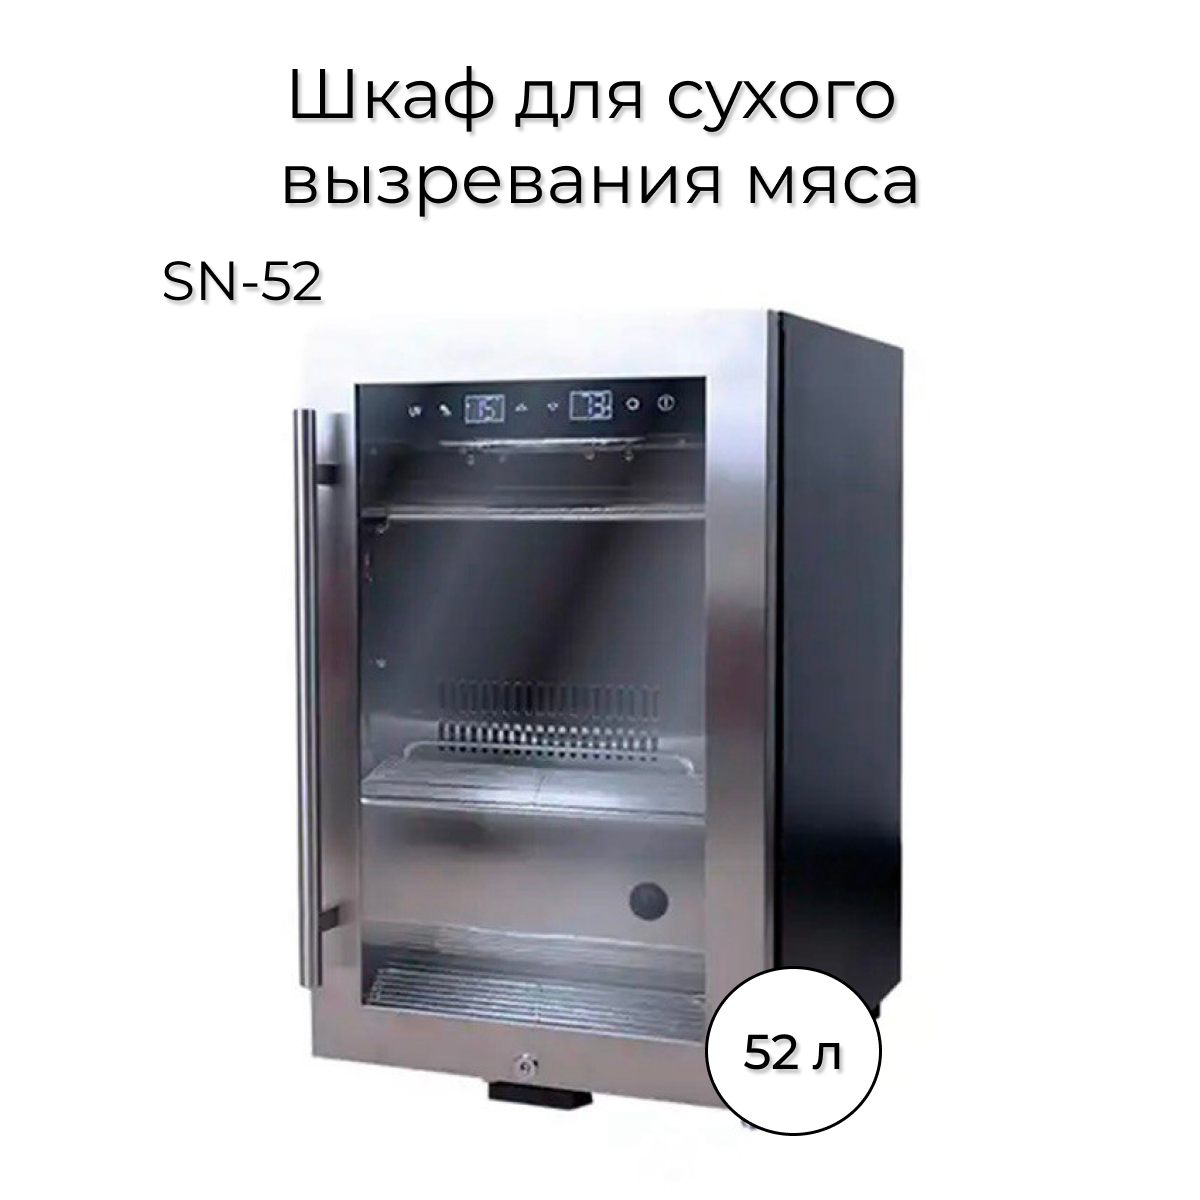 Холодильник Wistora SN-52 серебристый flamingo игрушка для собак кость из резины с ароматом говядины 10 5см